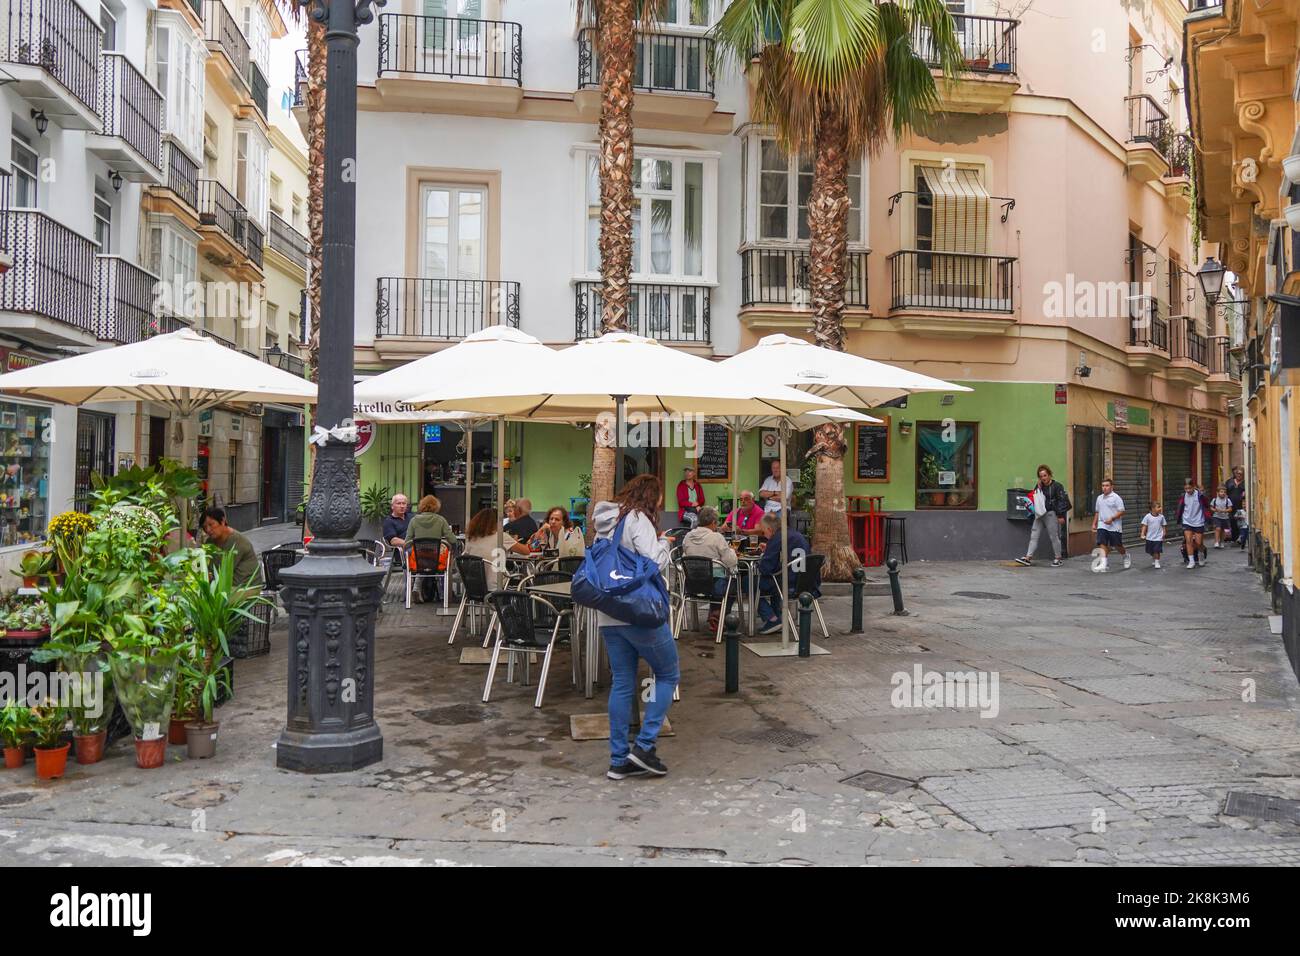 Small corner in the town of Cadiz, Andalusia, Costa de la luz, Spain. Stock Photo